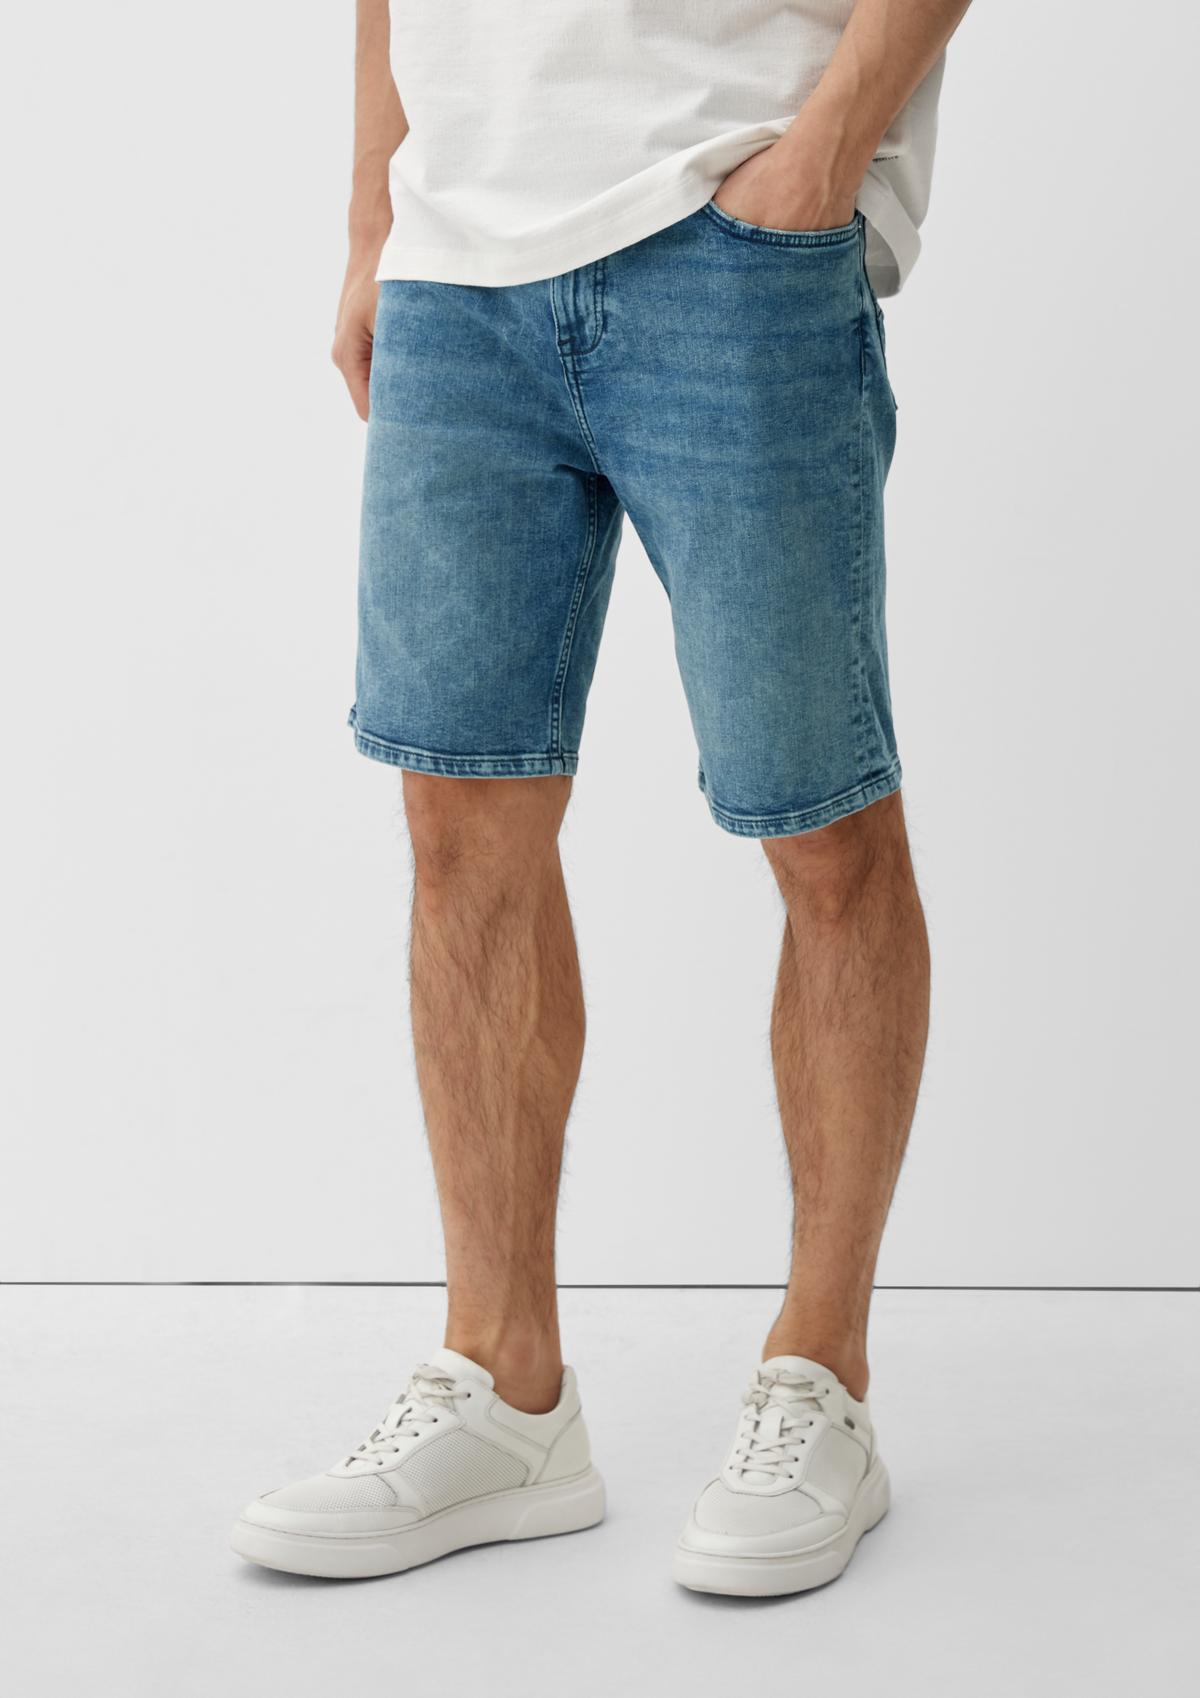 s.Oliver Slim: jeans met 5-pocket-model